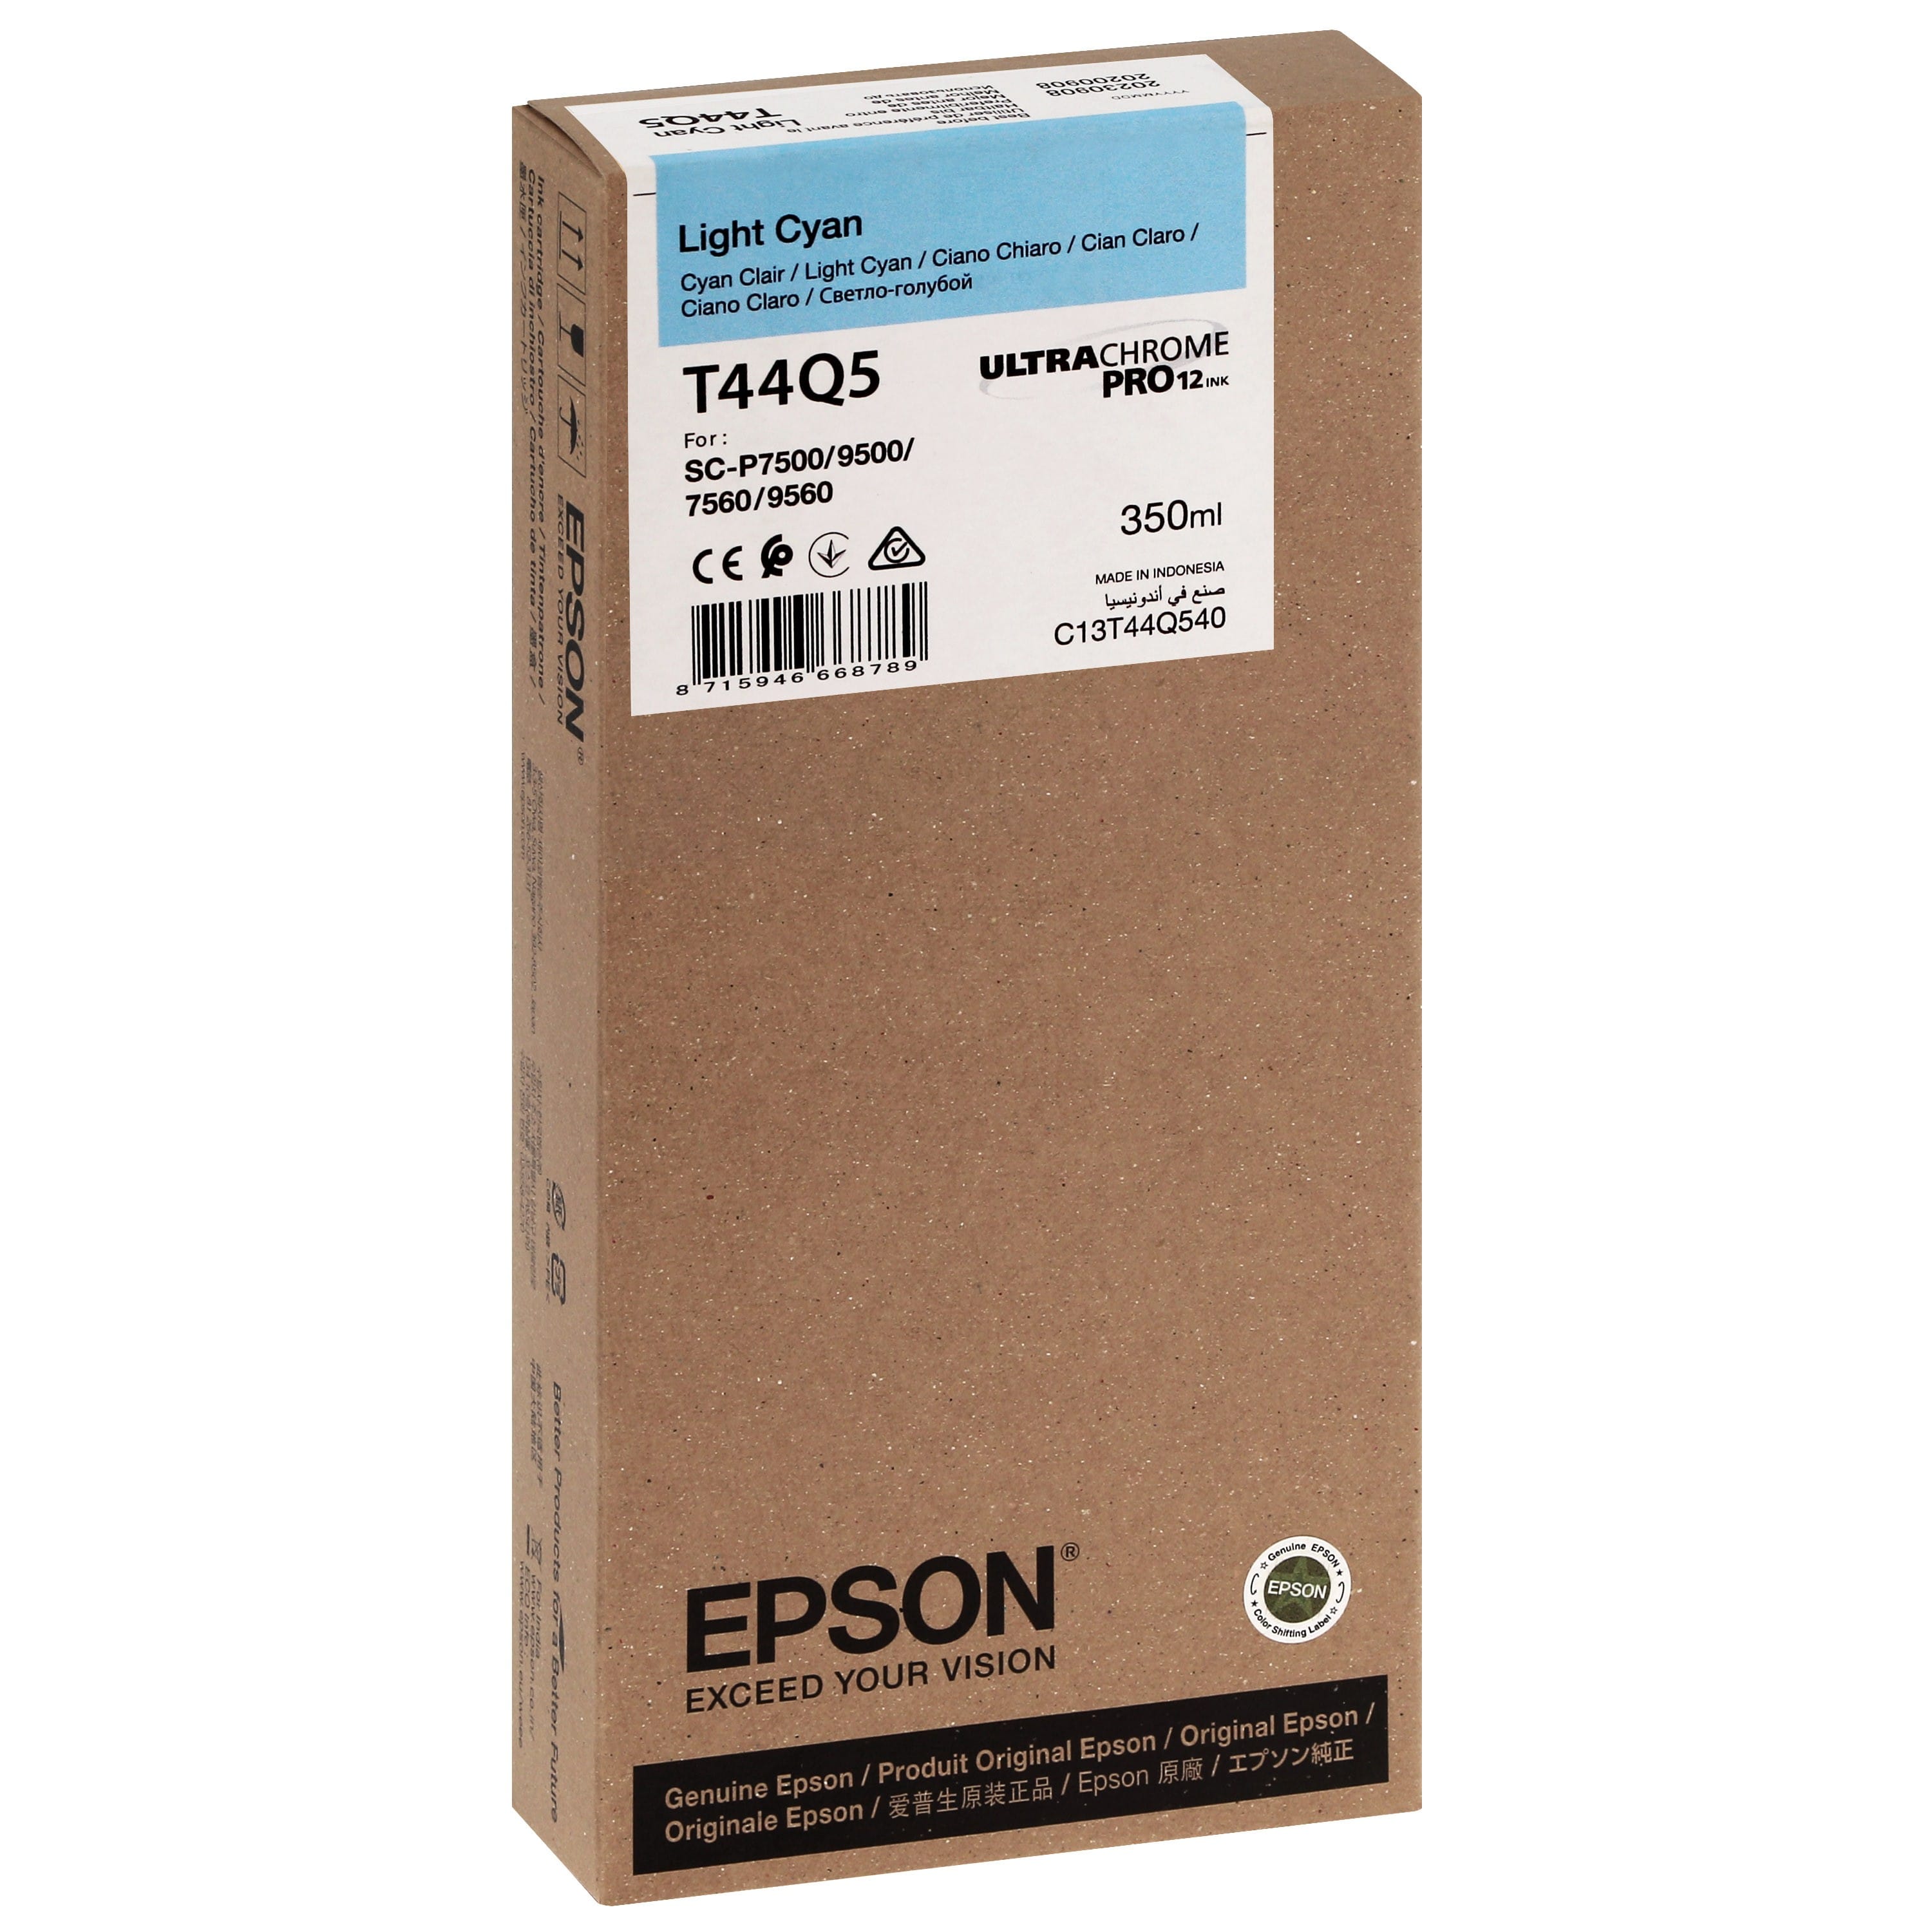 EPSON - Cartouche d'encre traceur T44Q5 Pour imprimante SC-P7500/9500 UltraChrome PRO Light Cyan - 350ml